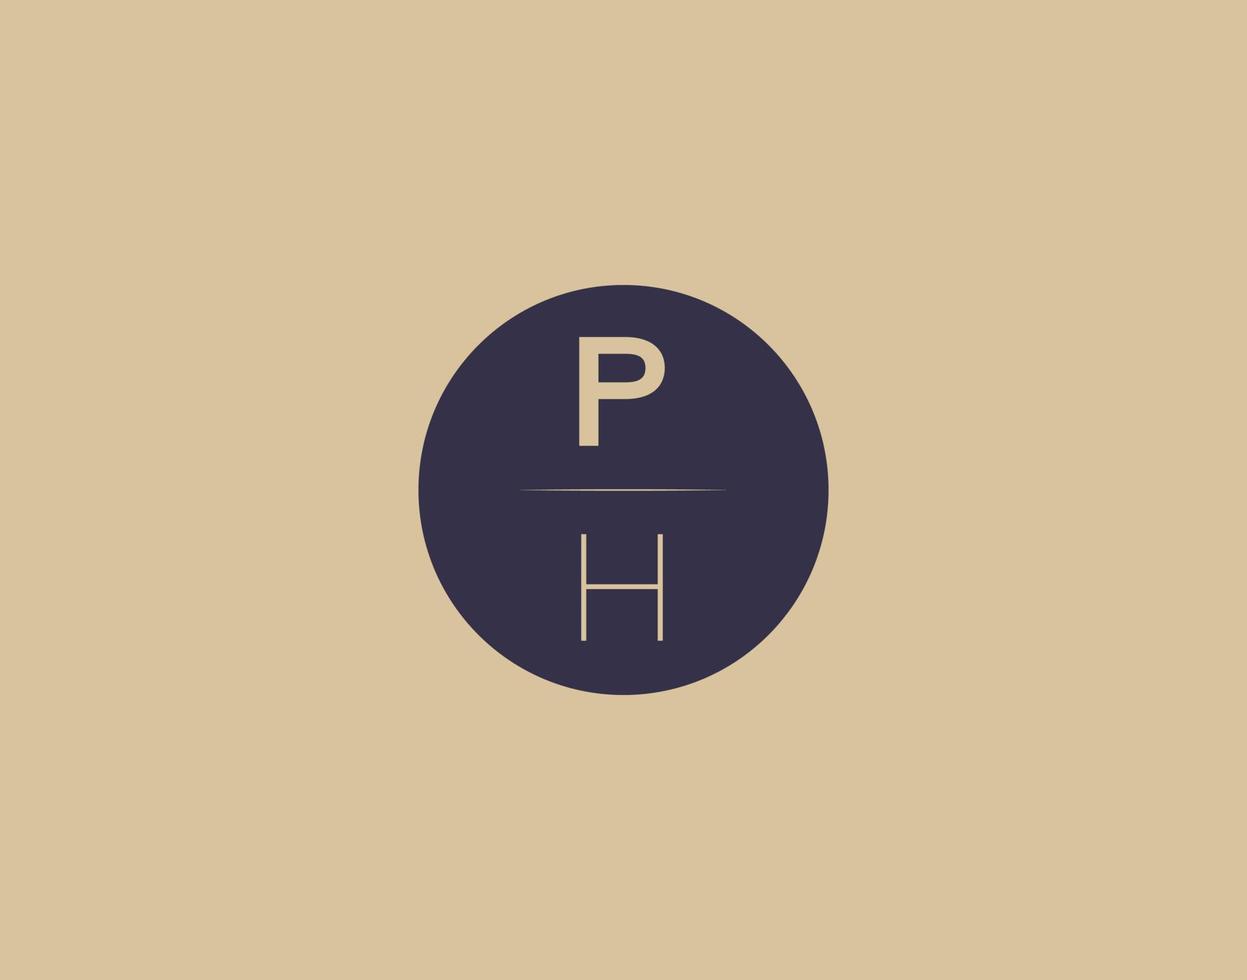 PH letter modern elegant logo design vector images